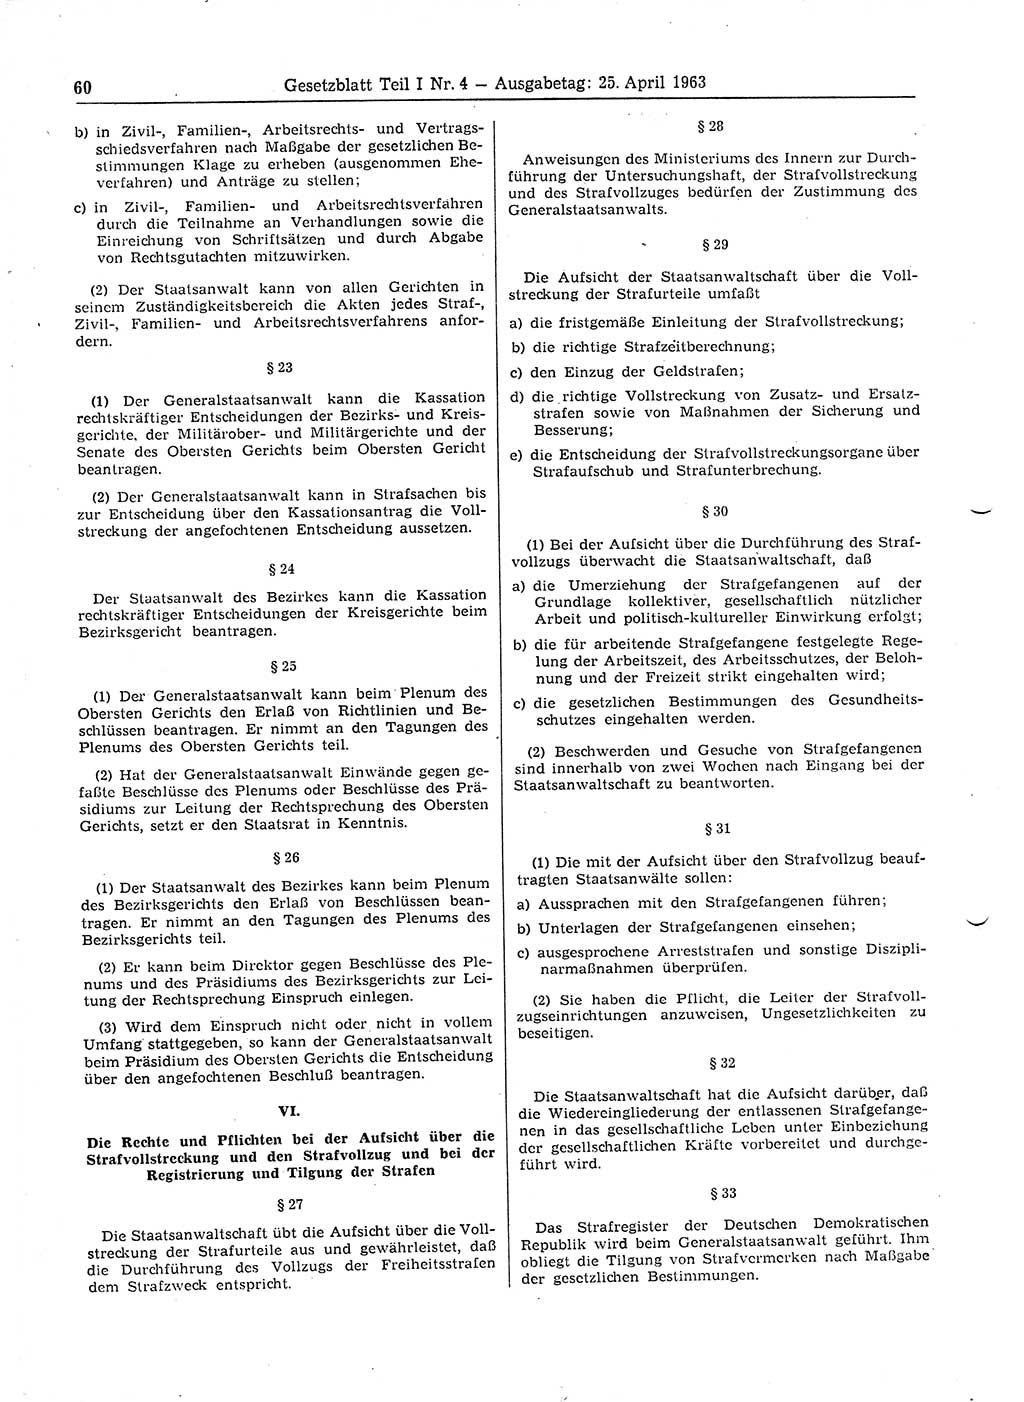 Gesetzblatt (GBl.) der Deutschen Demokratischen Republik (DDR) Teil Ⅰ 1963, Seite 60 (GBl. DDR Ⅰ 1963, S. 60)